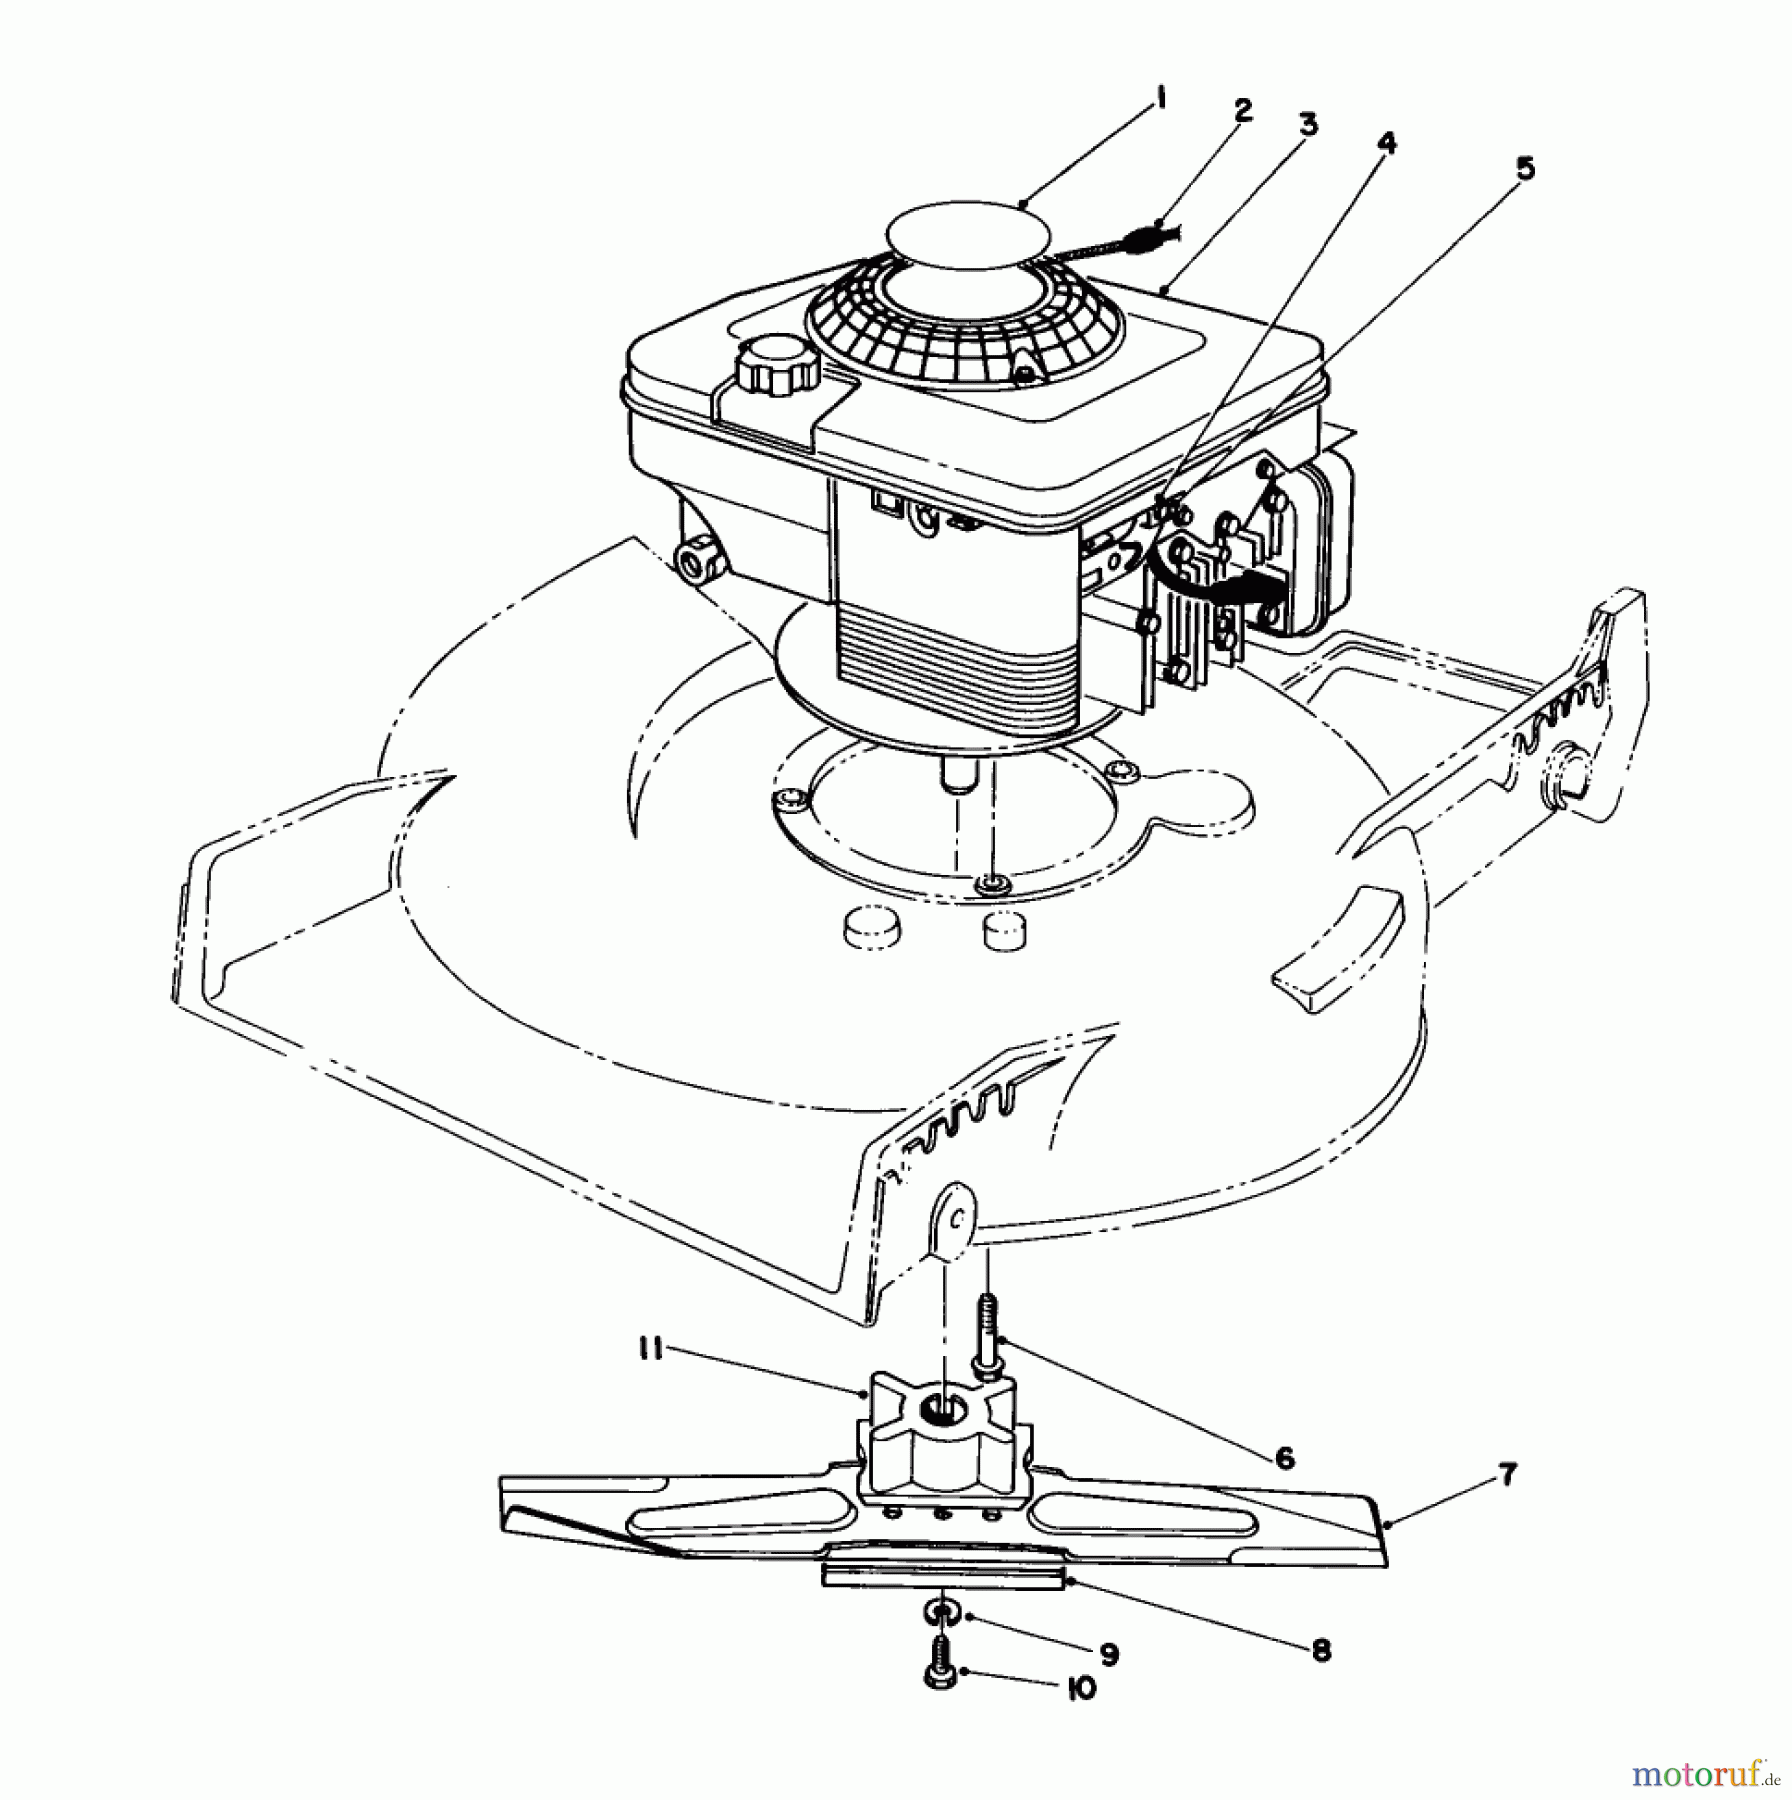  Toro Neu Mowers, Walk-Behind Seite 1 20217 - Toro Lawnmower, 1992 (2000001-2999999) ENGINE ASSEMBLY